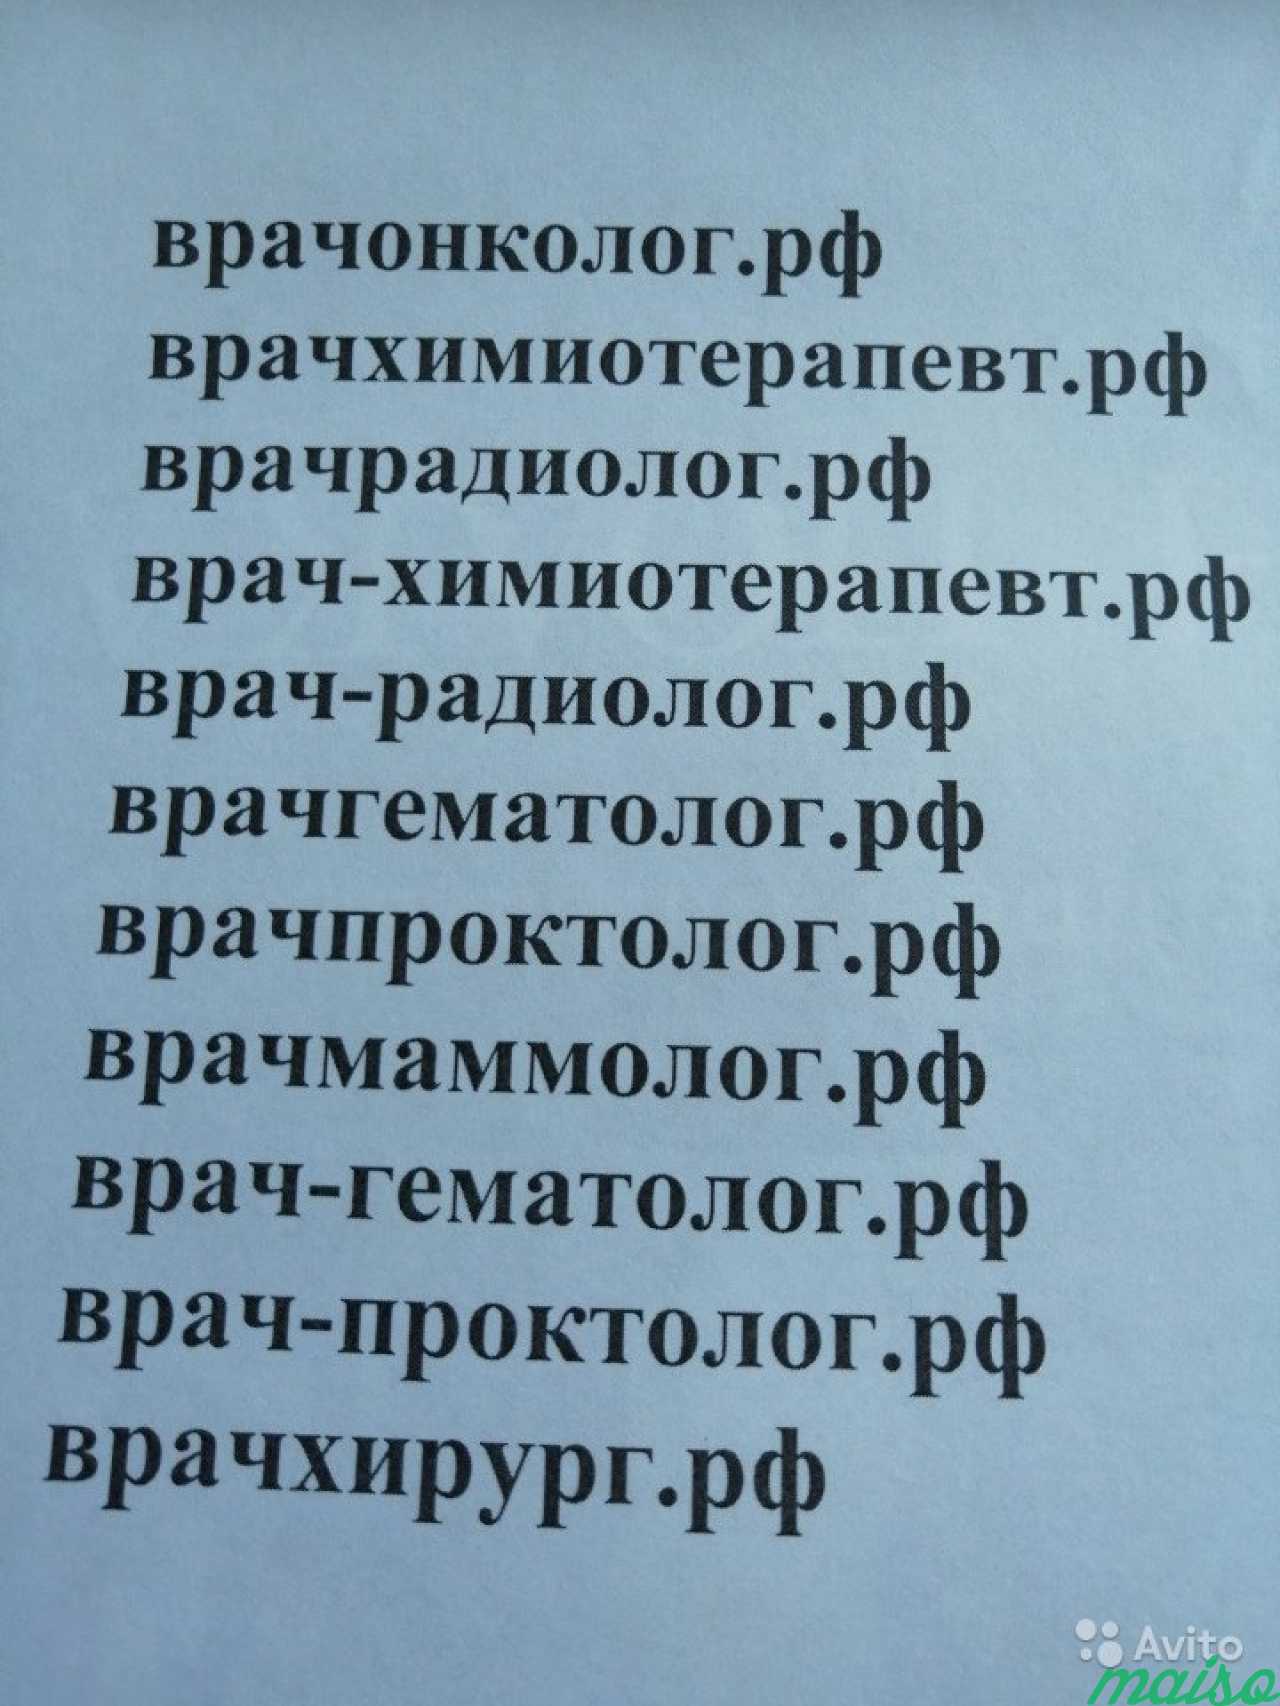 Продам или сдам домены для сайта онколога и пр в Санкт-Петербурге. Фото 1